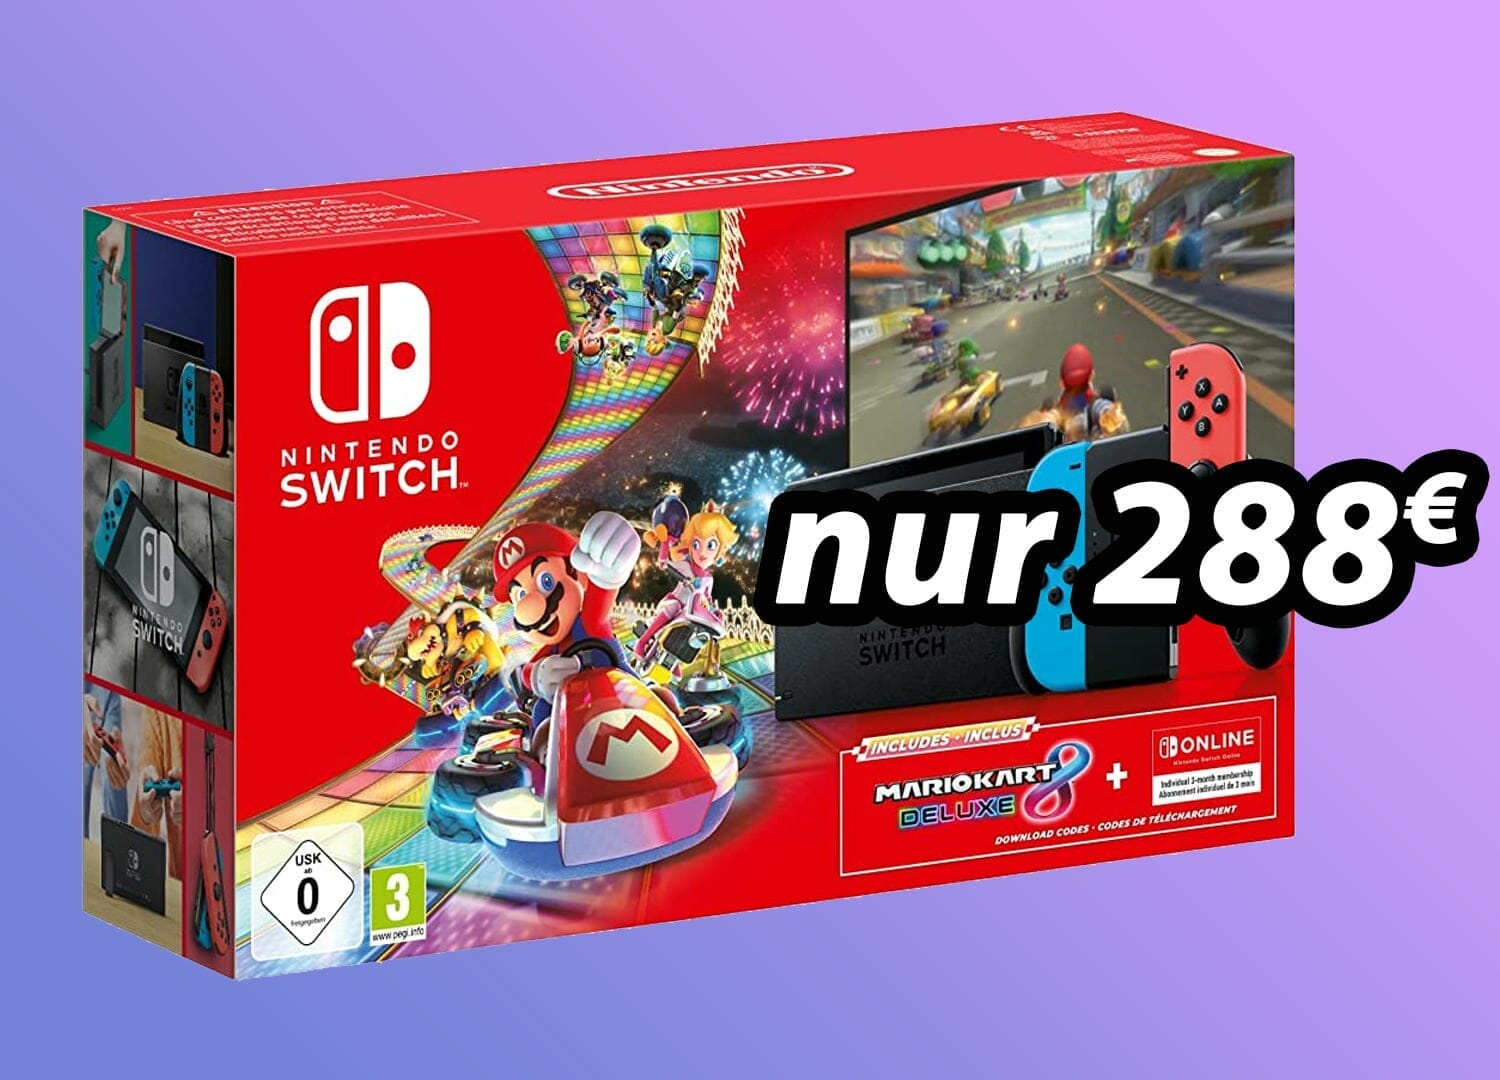 Nintendo lockt mit günstigem für inkl. Mario Kart 8 Filme Euro! 4K 288 - Switch-Bundle